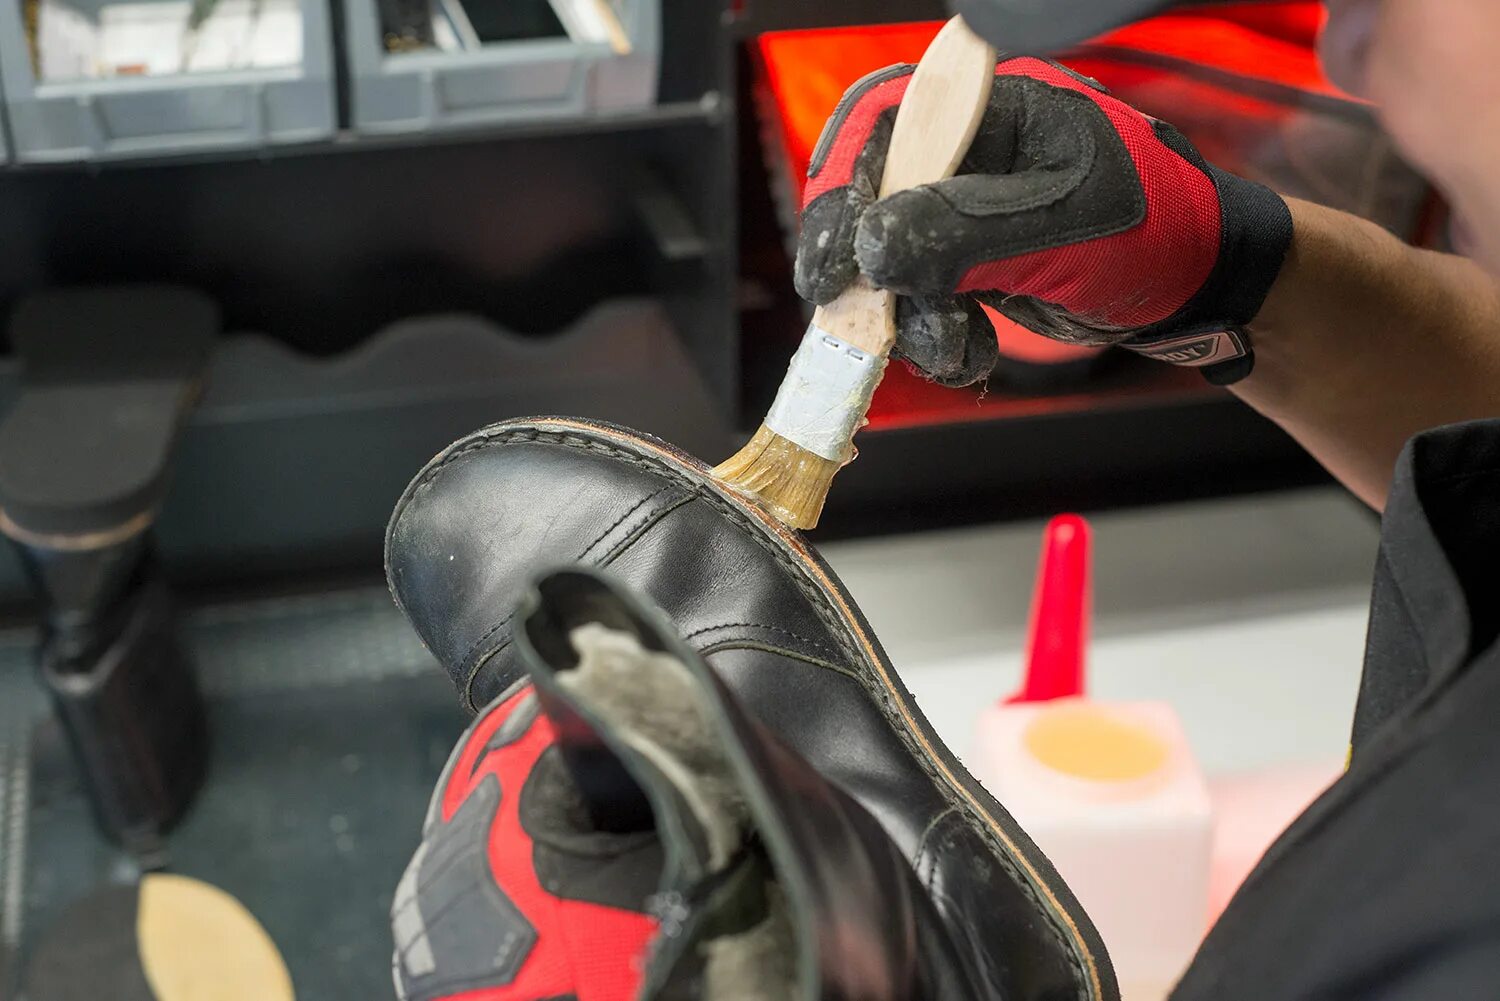 Обувная мастерская. Супинатор в обуви ремонт. Инструменты для ремонта обуви. Материалы для обувной мастерской.